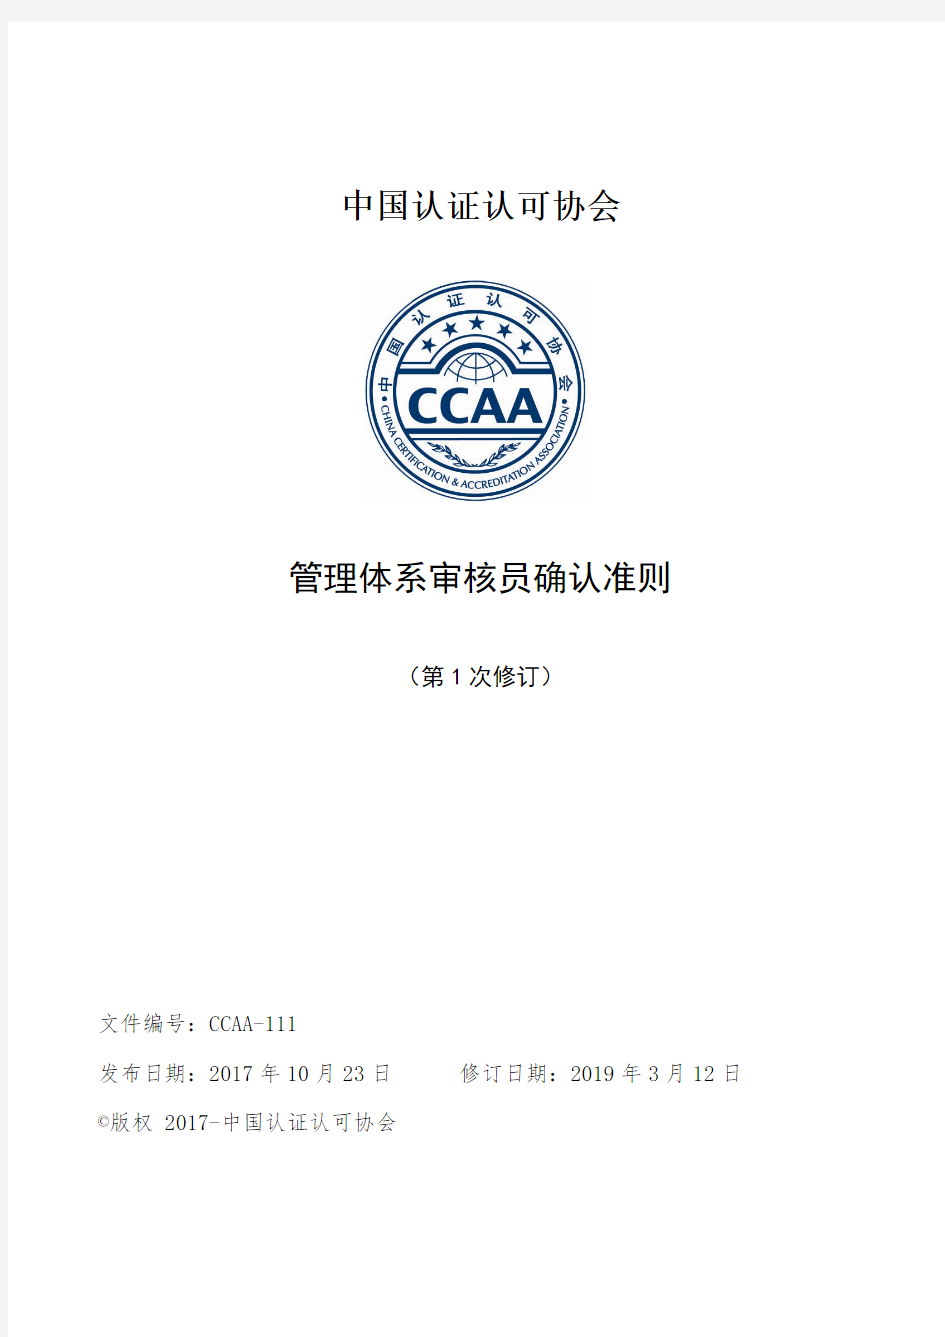 中国认证认可协会-CCAA